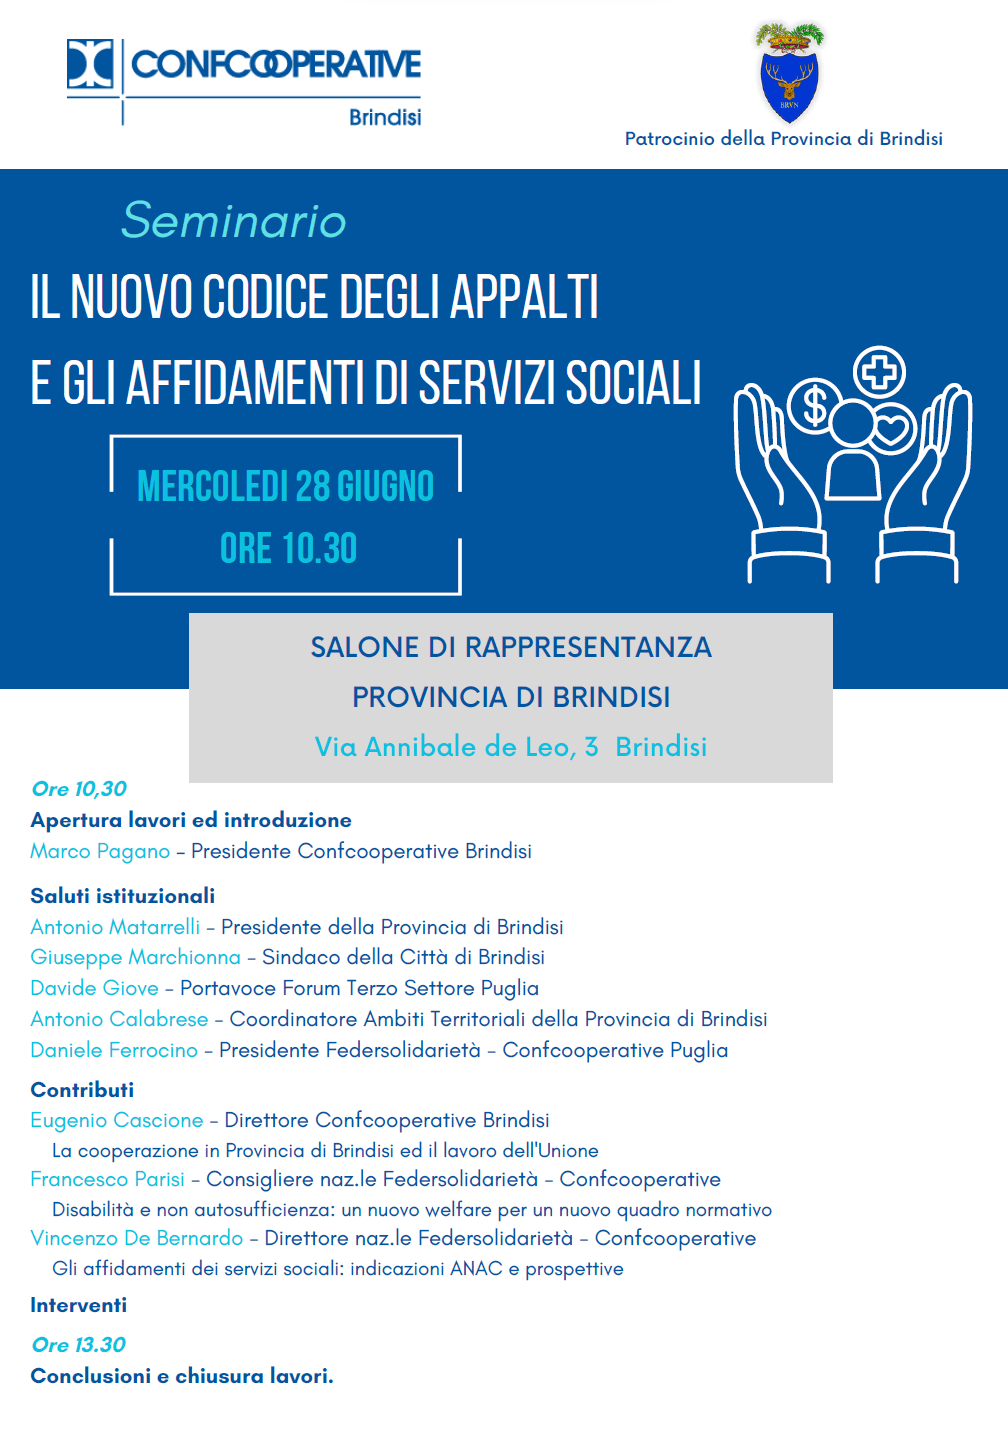 Seminario "Il nuovo codice degli appalti e gli affidamenti di servizi sociali"